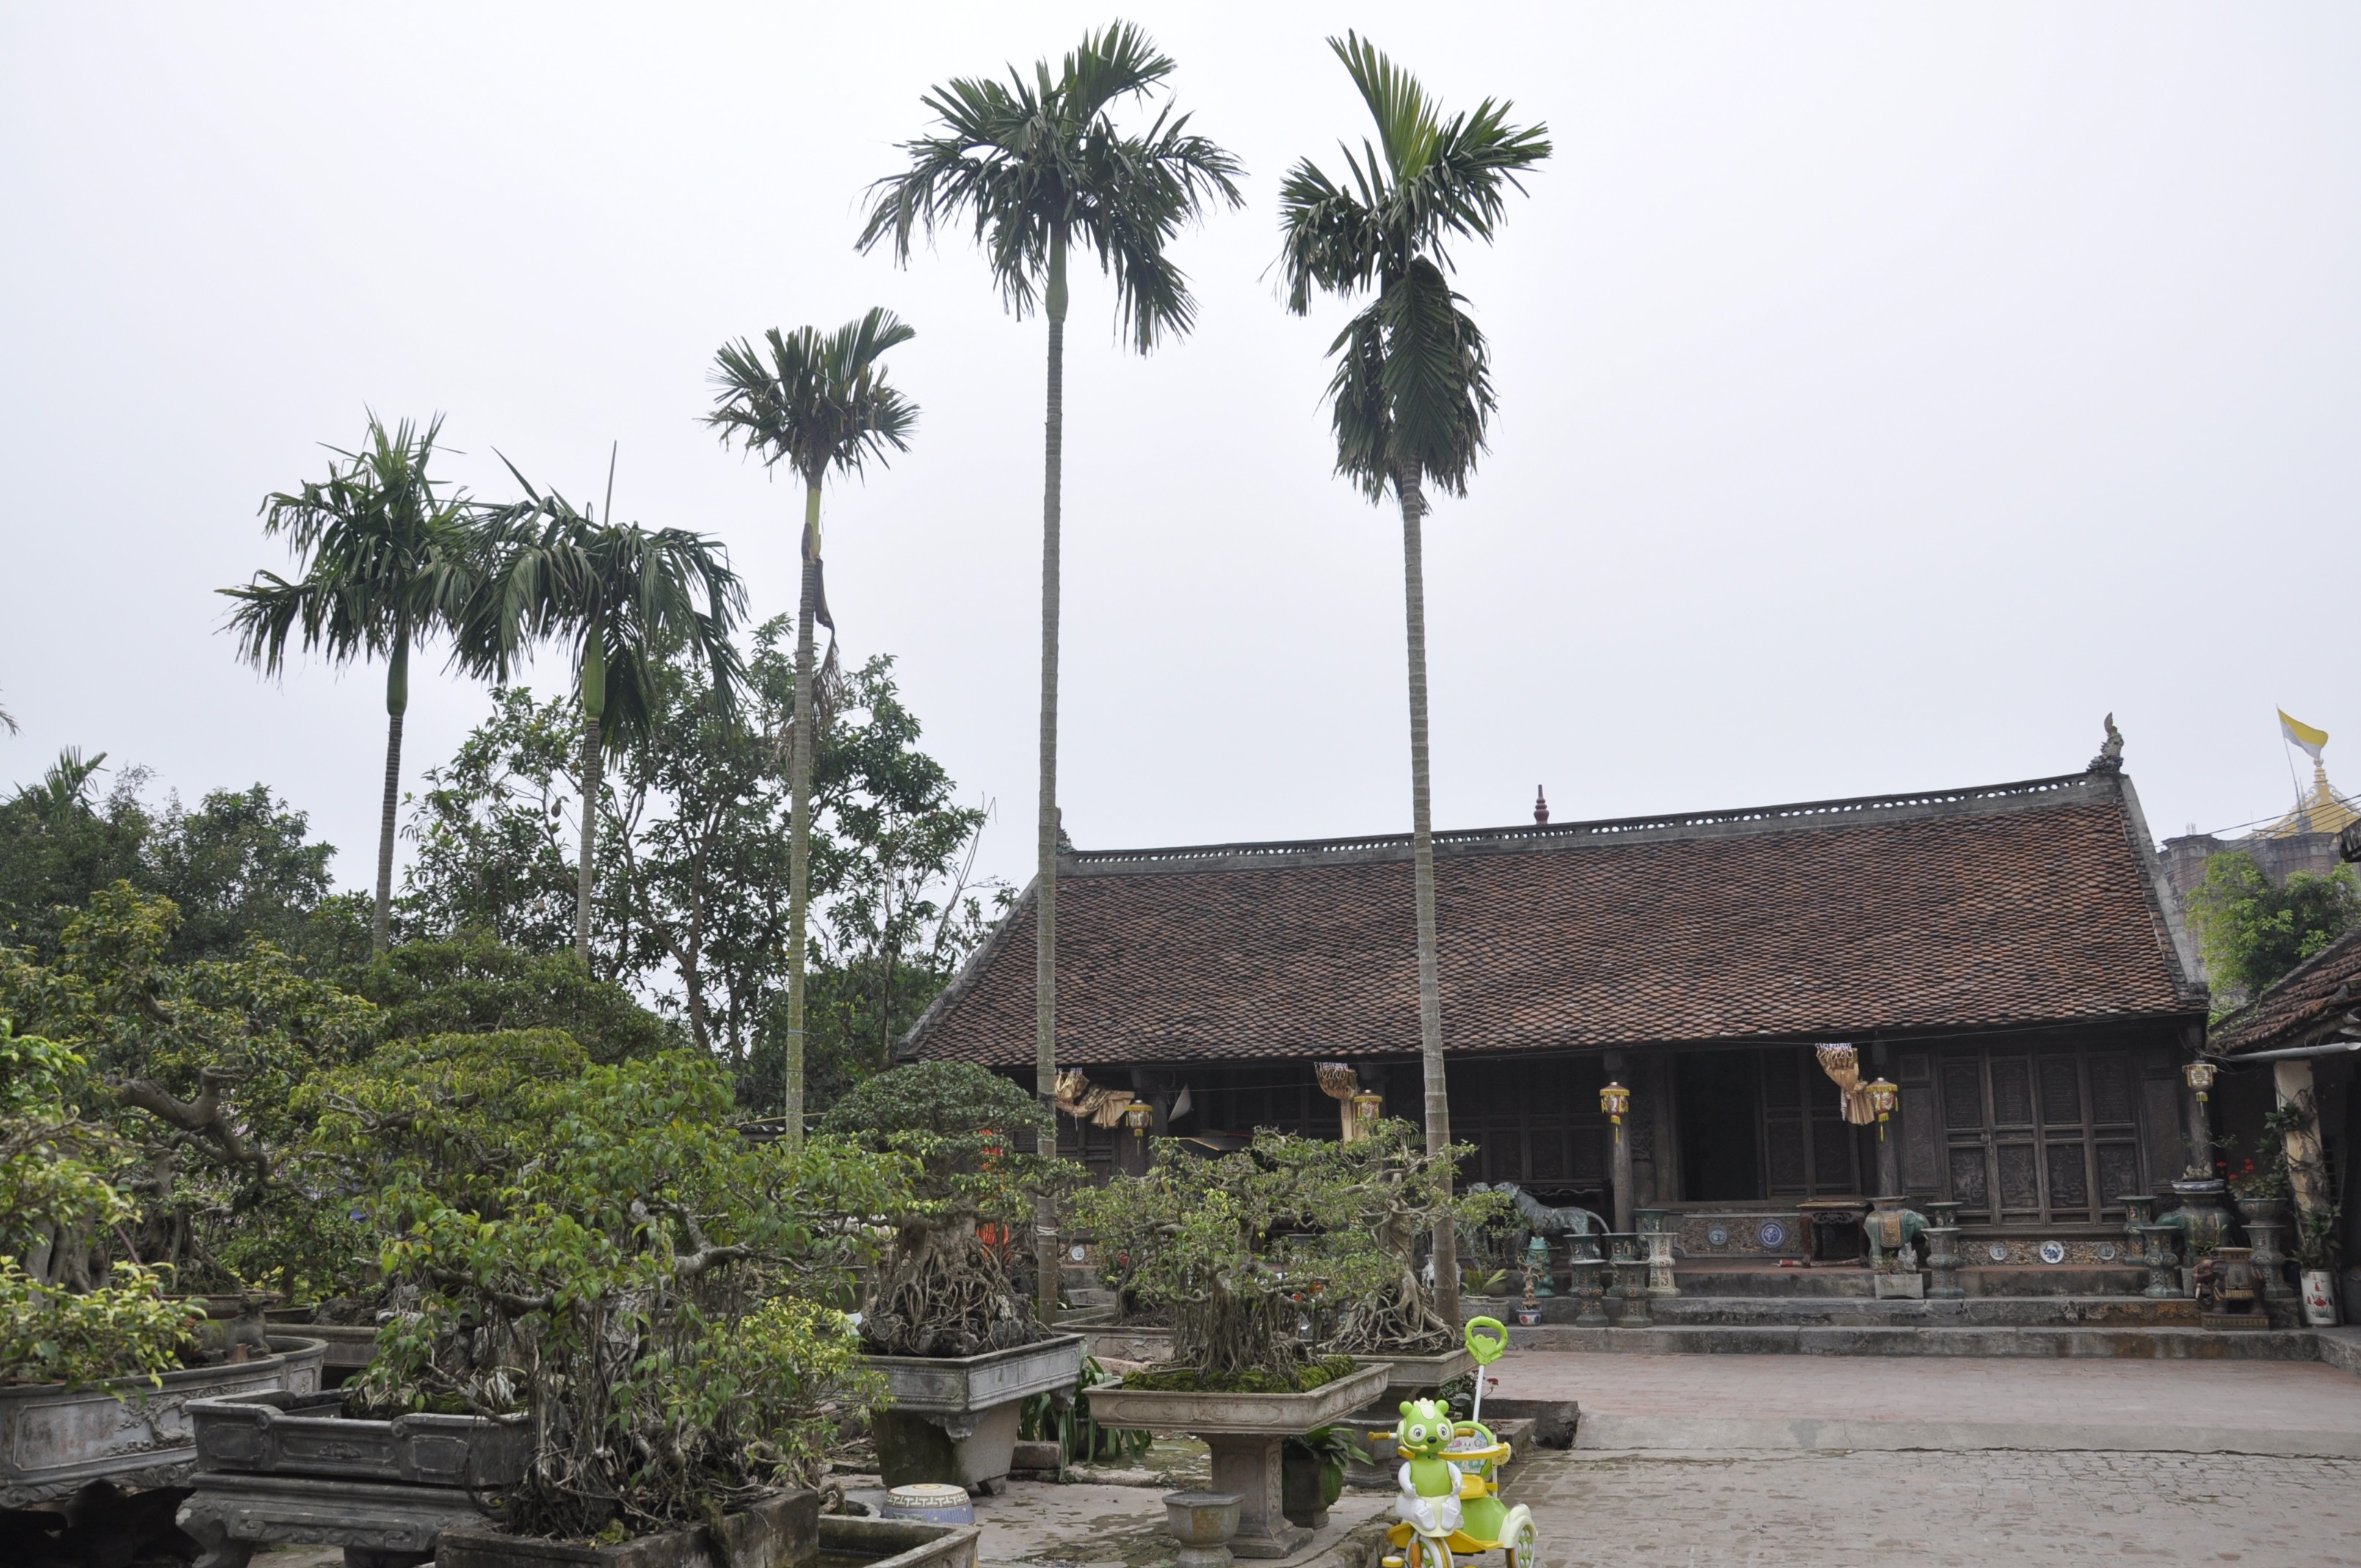 Kiến trúc mái nhà truyền thống ở Việt Nam Bamboo architecture